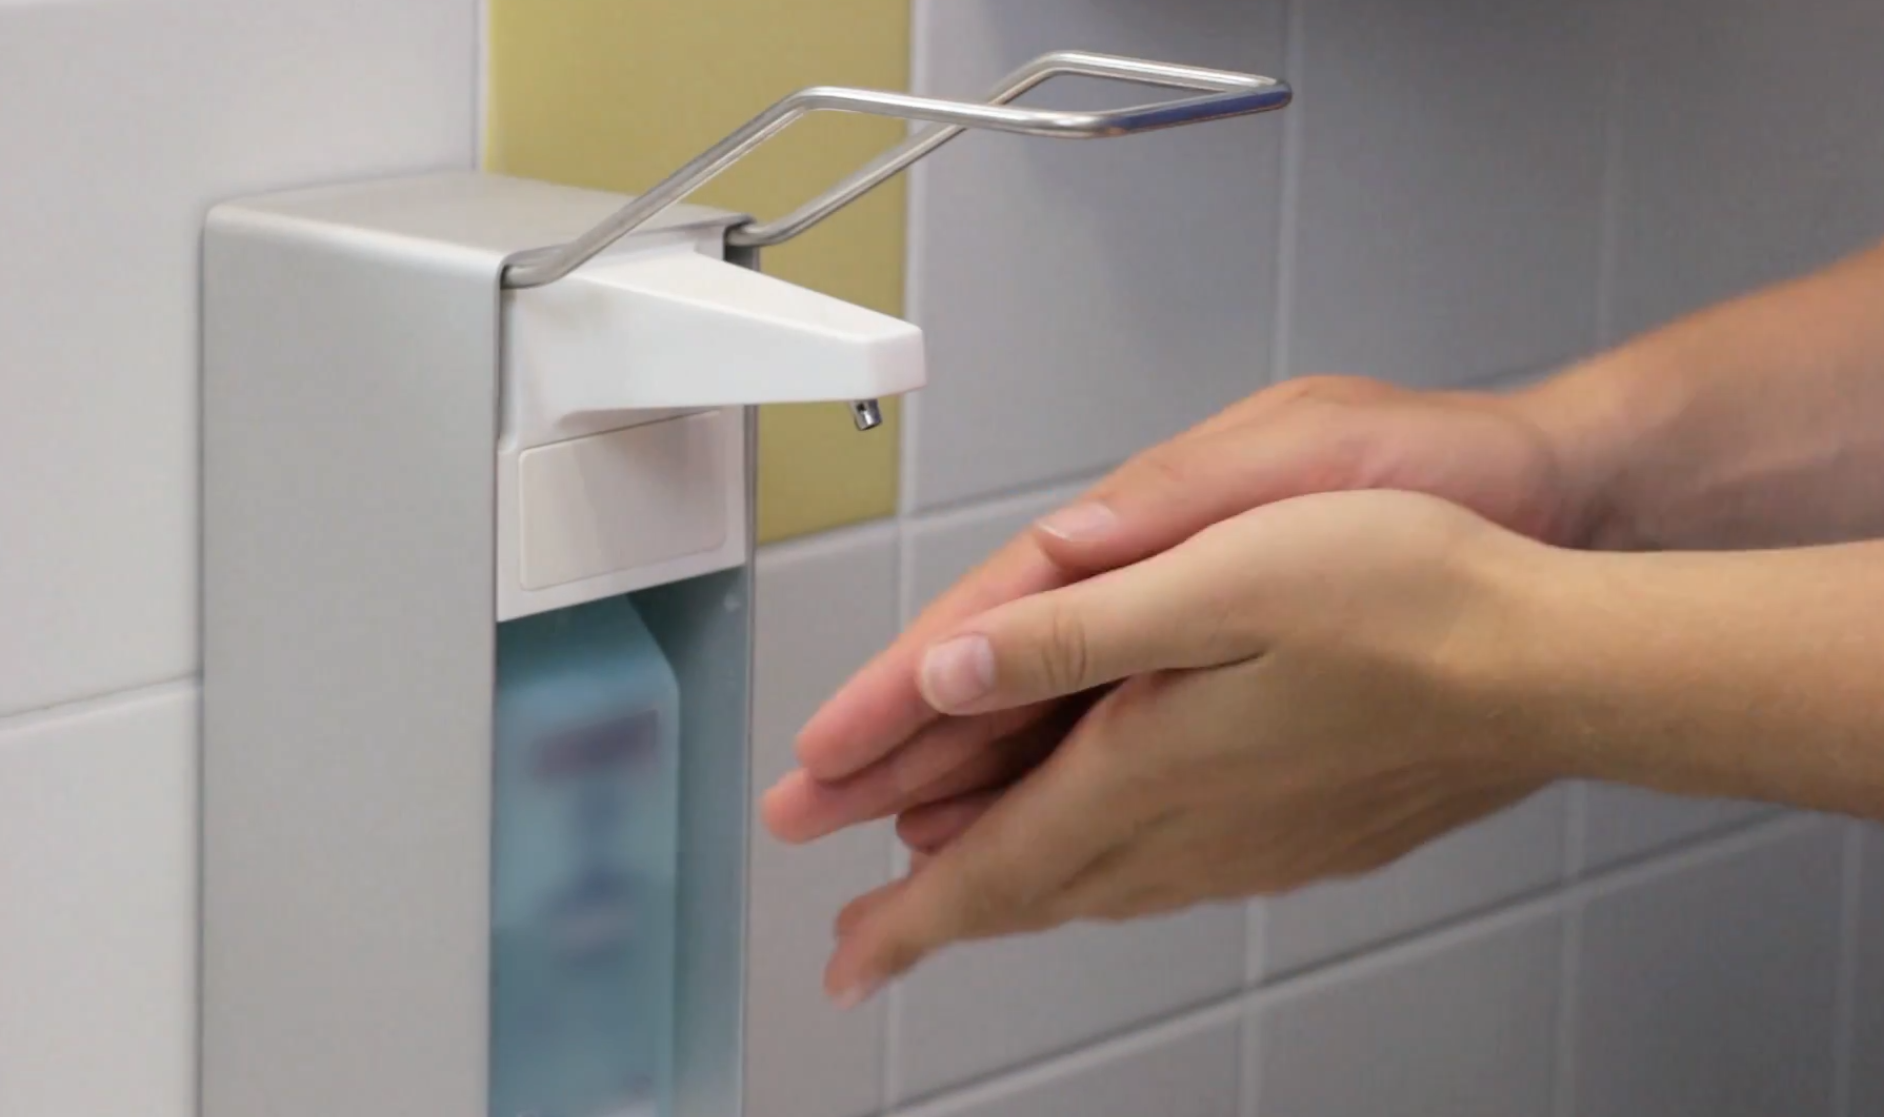 Videovorschaubild des Hygienevideos für Händehygiene